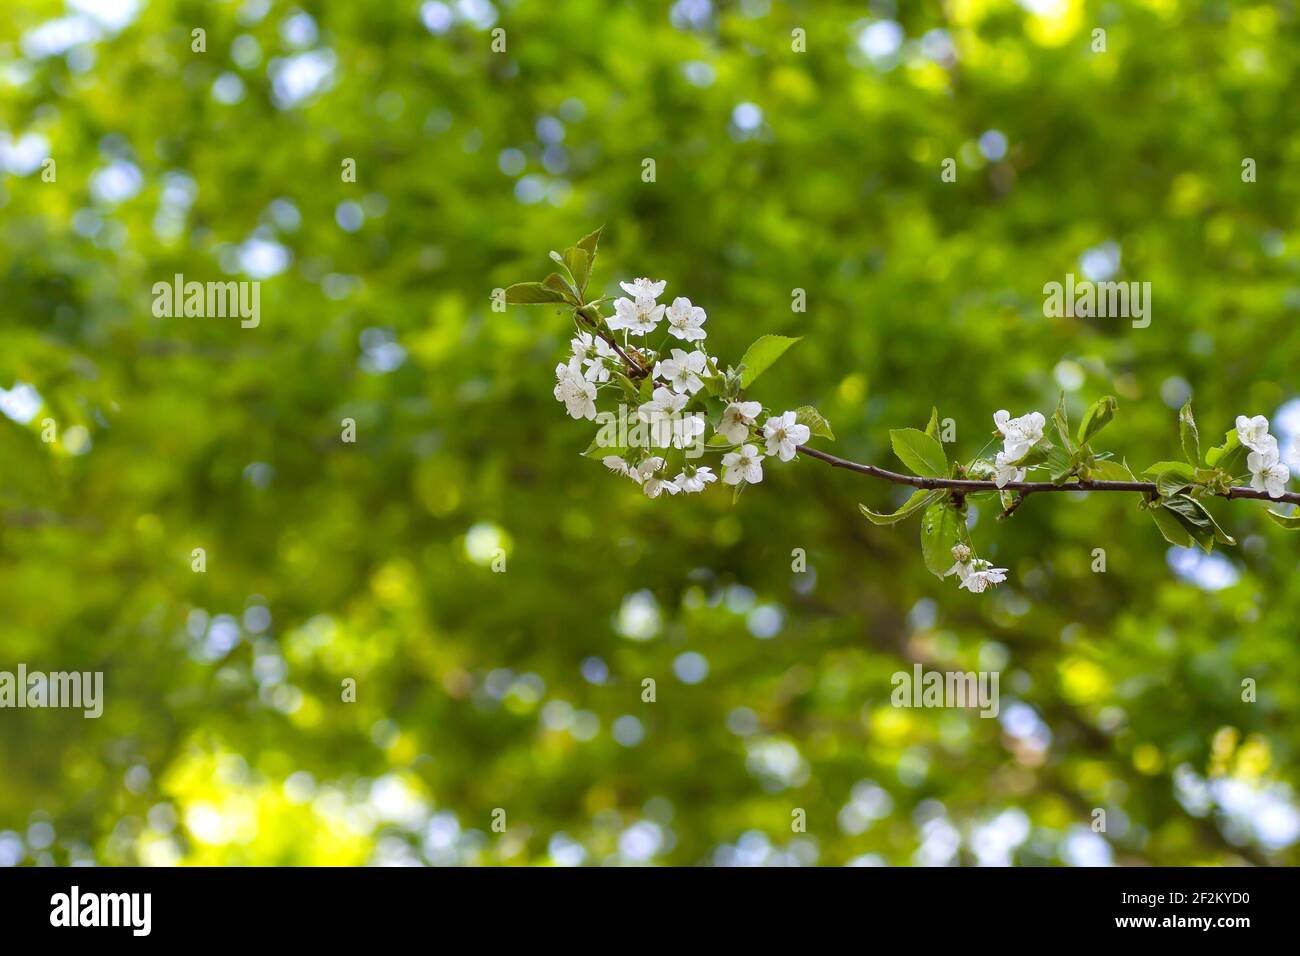 Prunus avium wild cherry tree white flowers blooming in spring Stock Photo